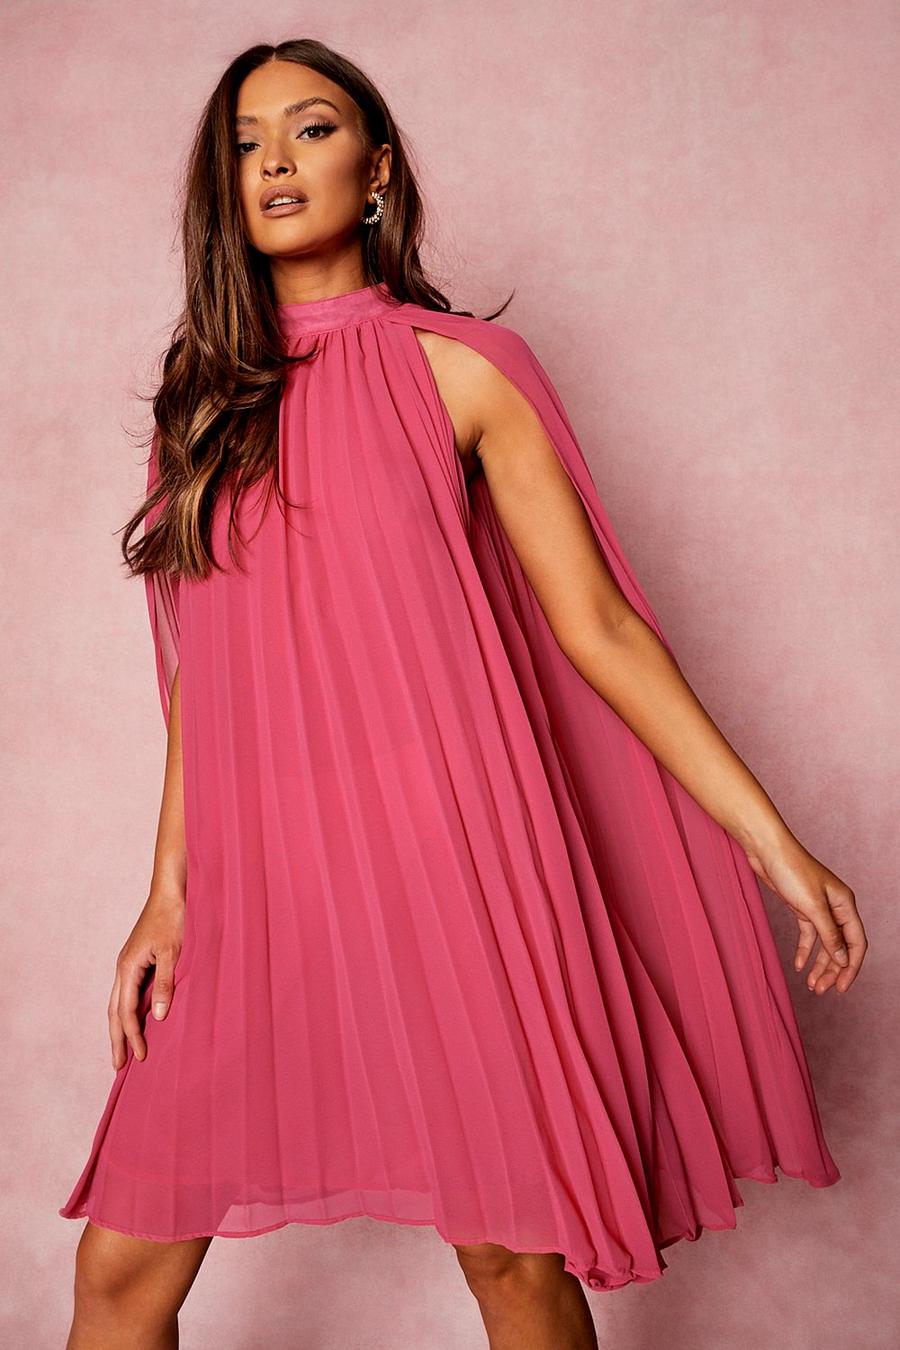 Smok-Kleid mit Cape, Himbeerrot pink